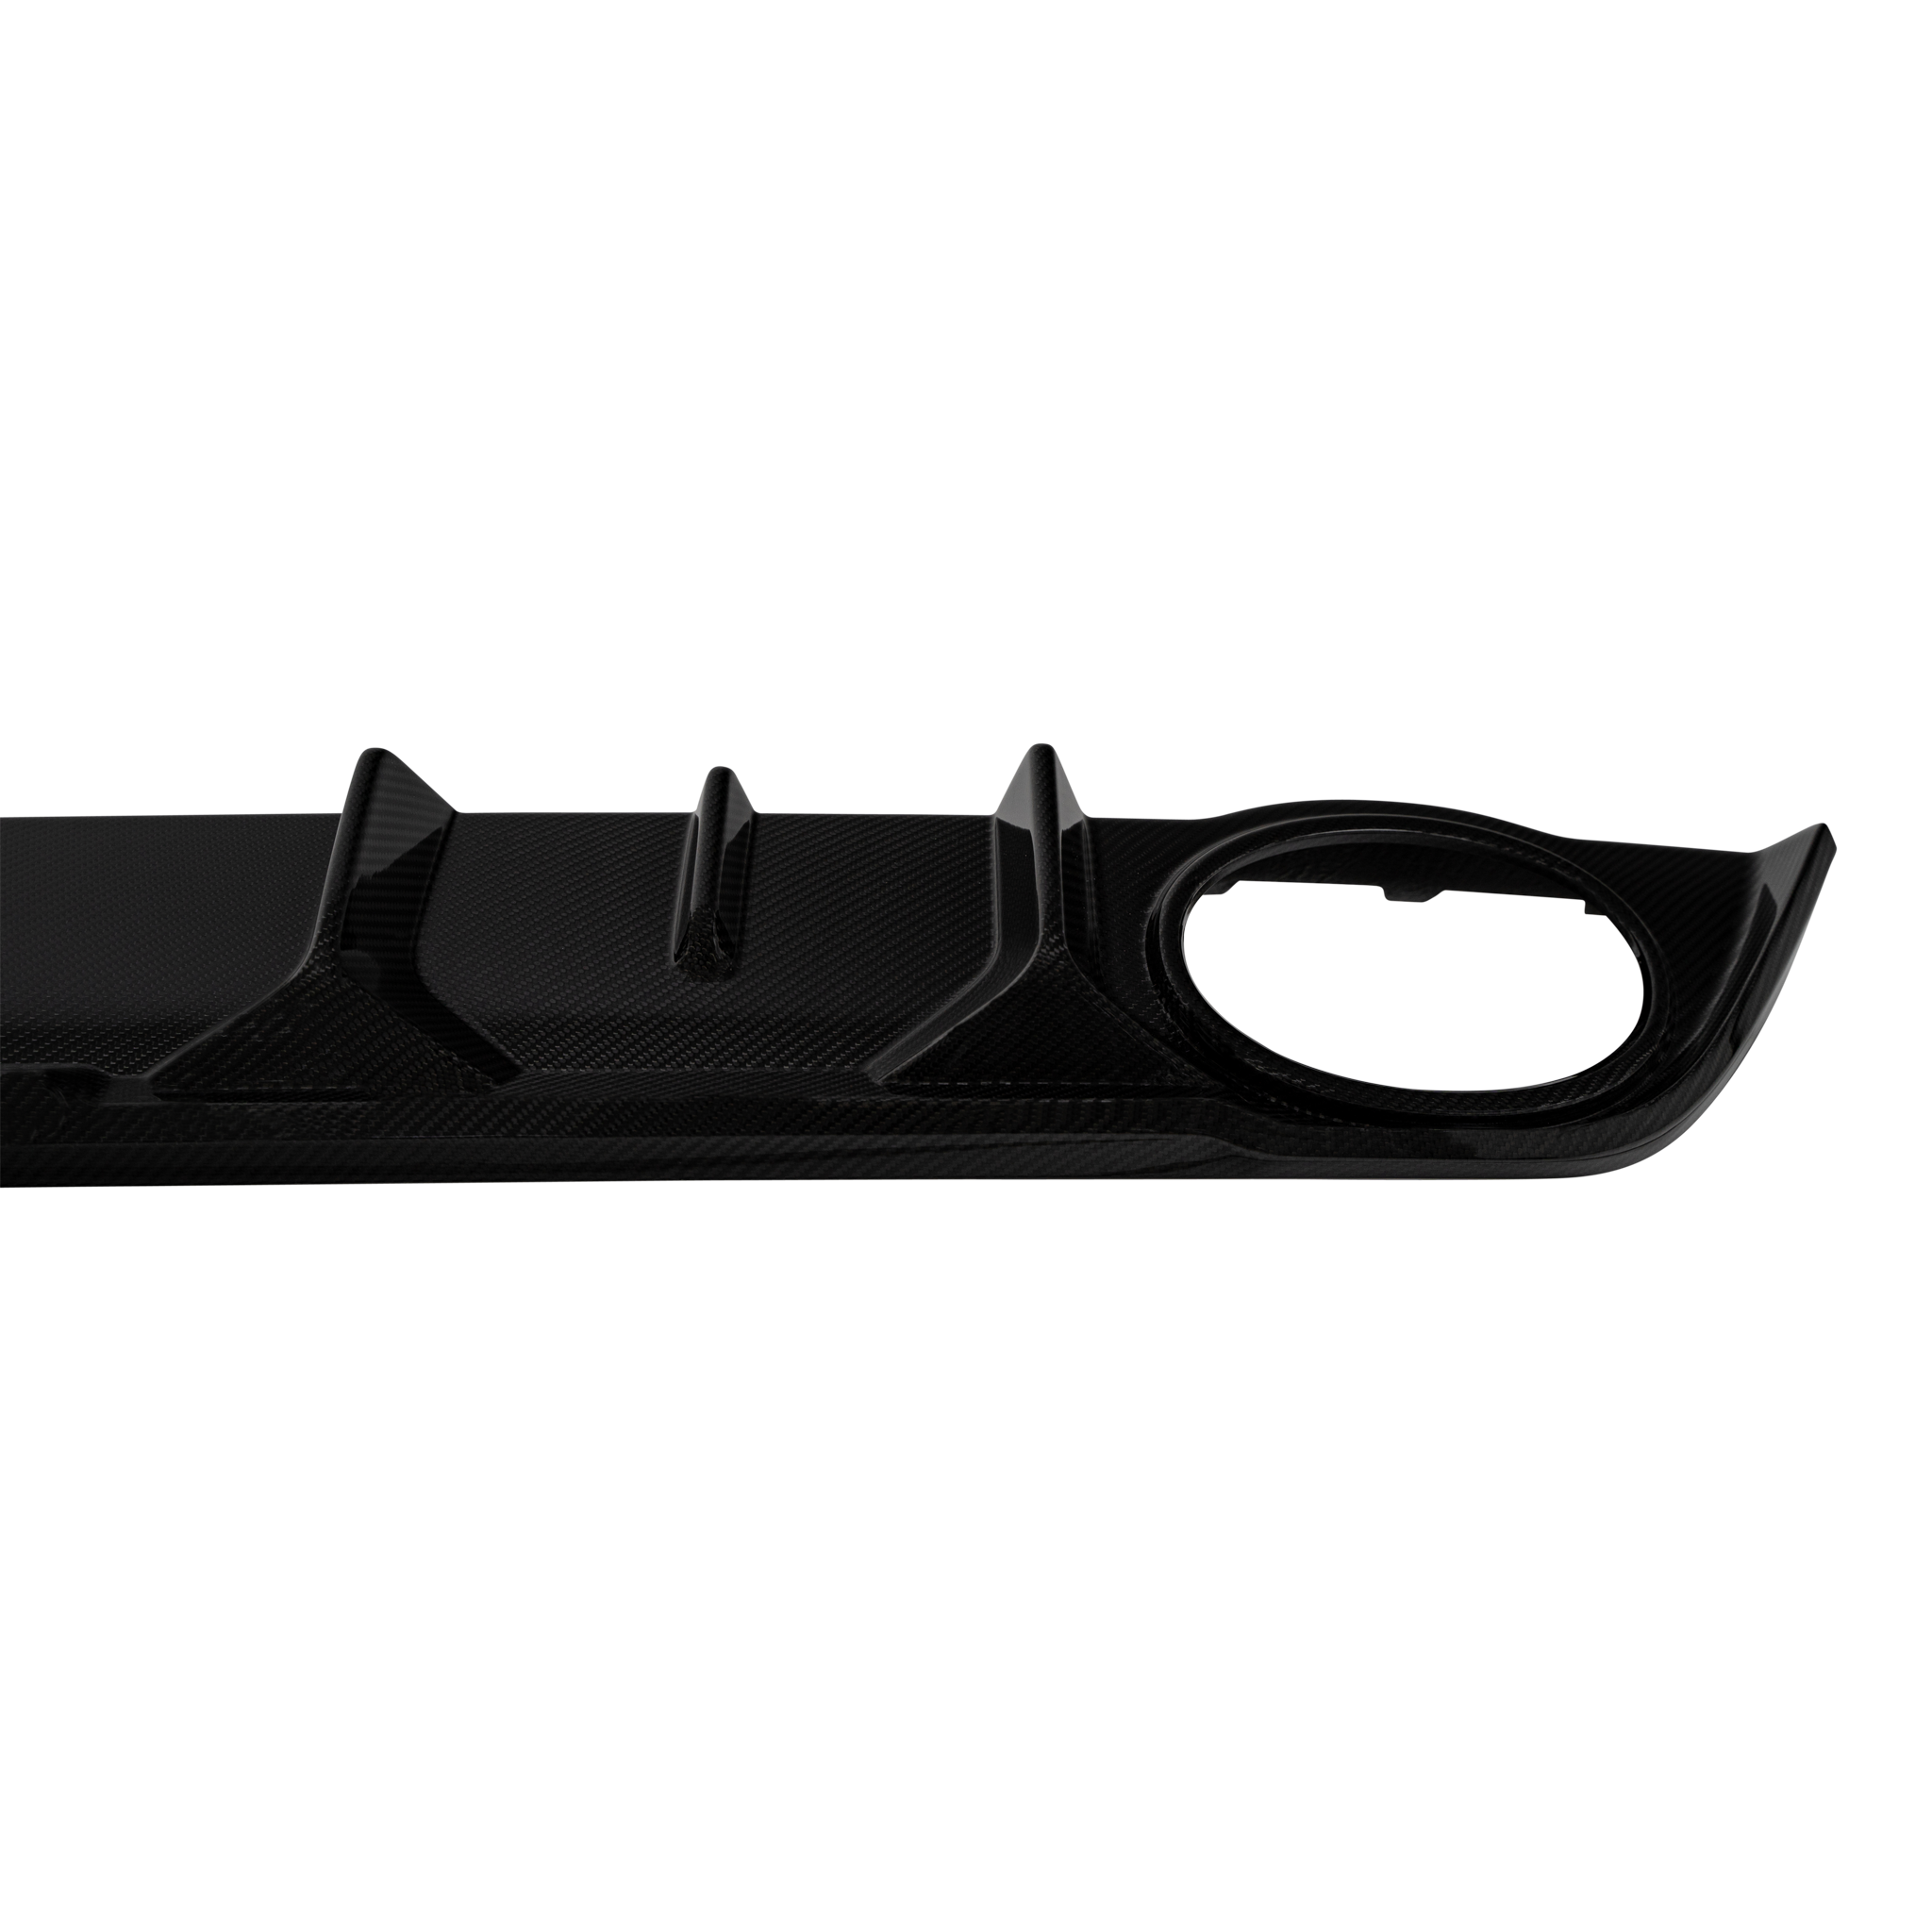 Urban Carbon Fibre Aero Kit for Audi RS3 Sportback